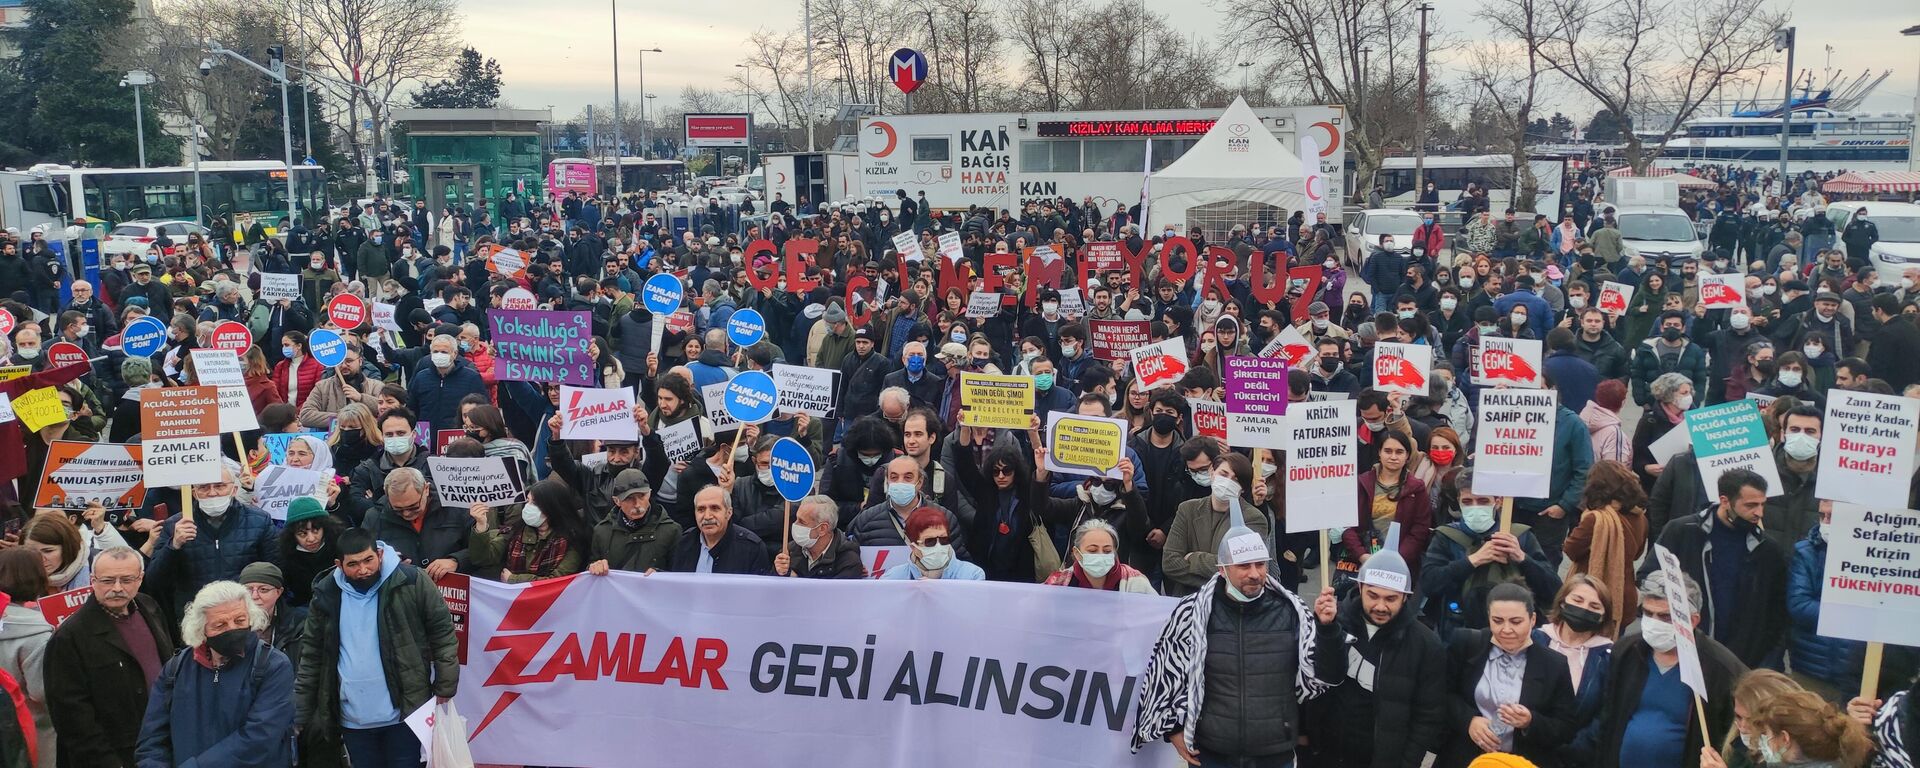 İstanbul’da ‘zamlar geri alınsın’ protestosu: ‘İnsanca yaşamak istiyoruz’ - Sputnik Türkiye, 1920, 20.02.2022